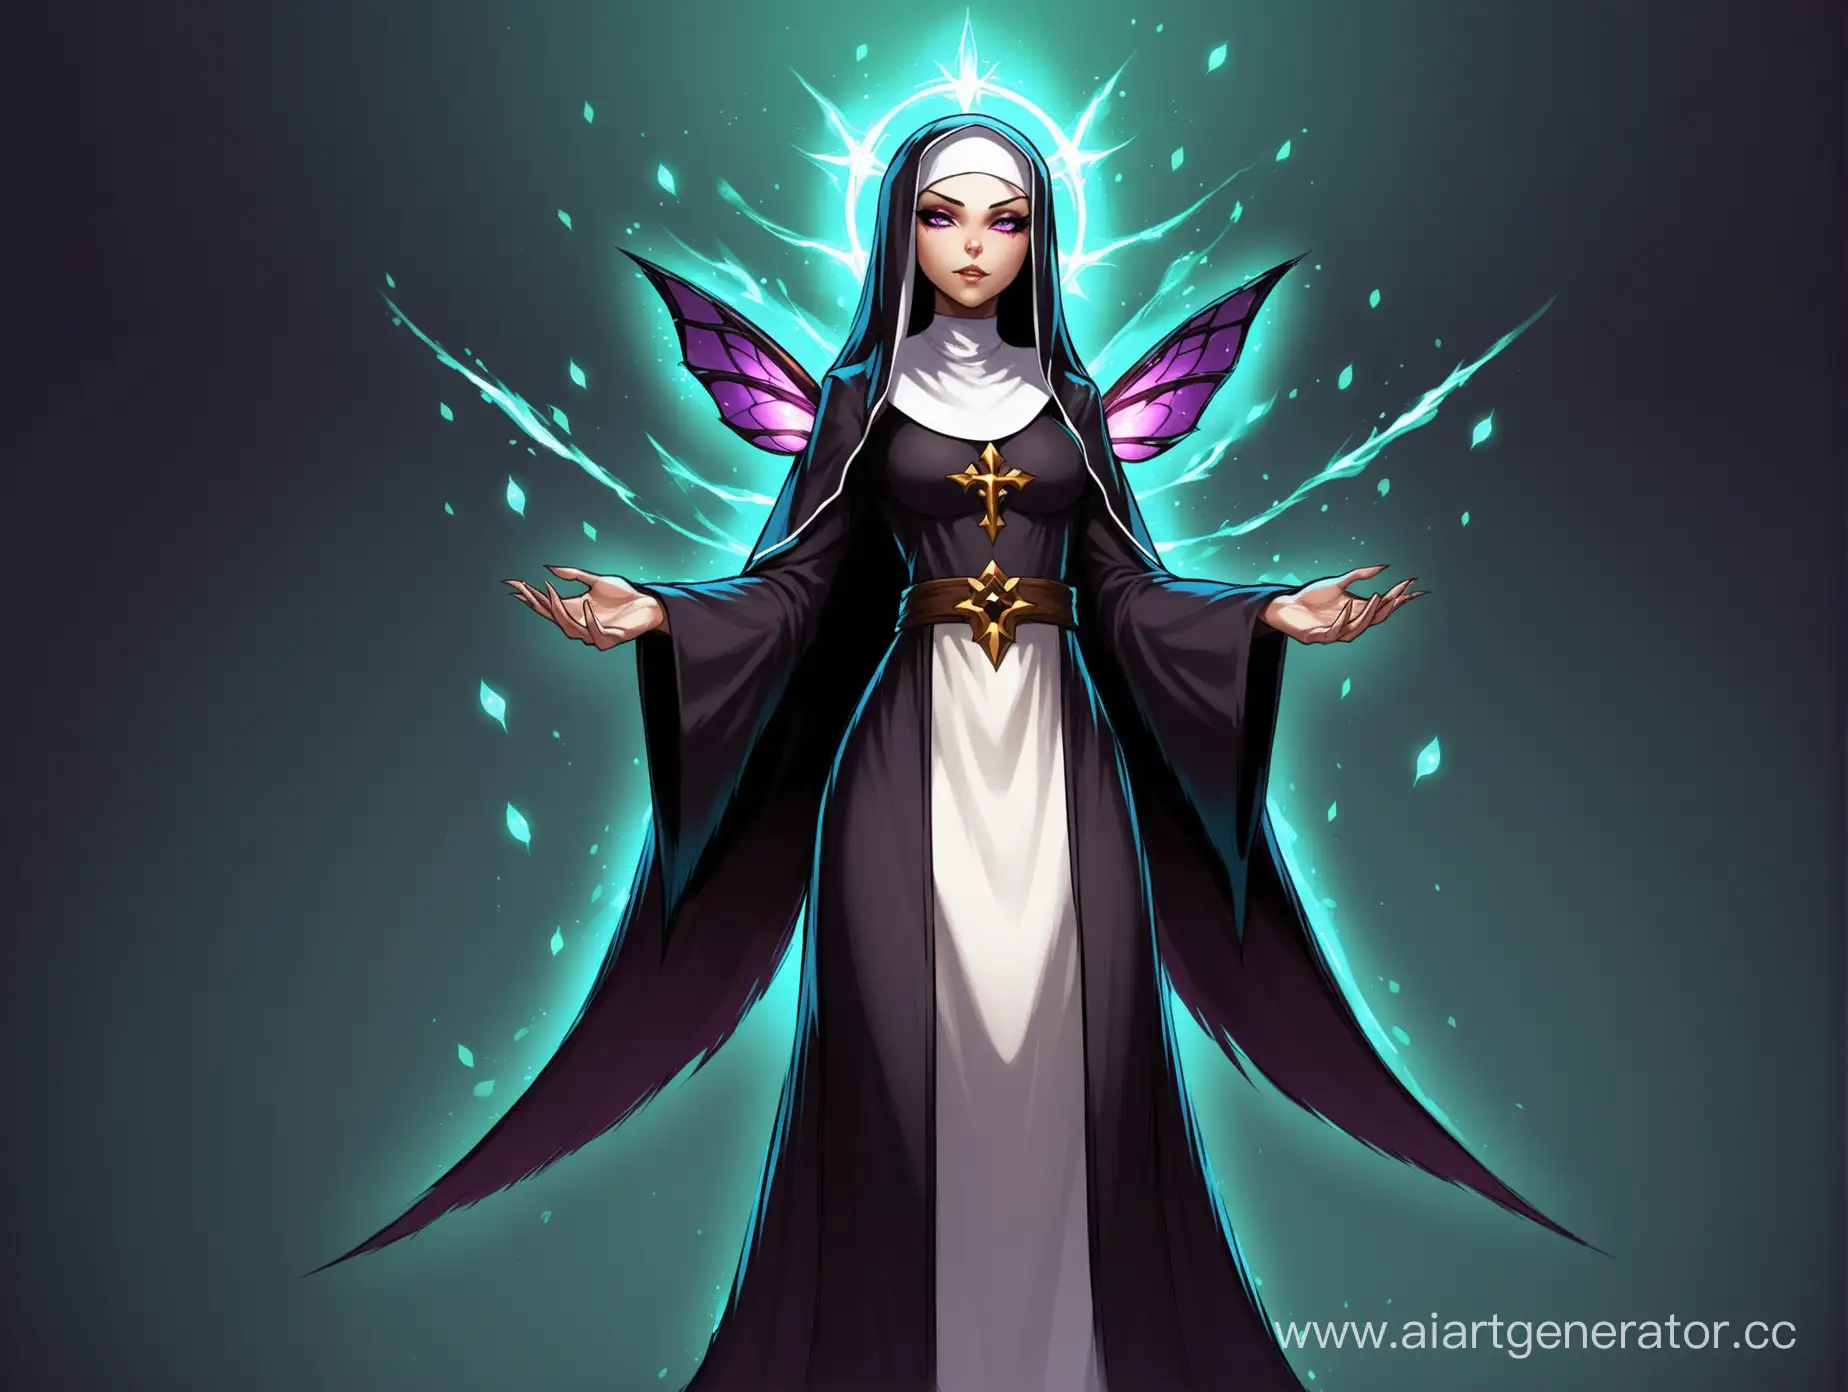 миреска темная фея из игры под названием Dota 2 которая выглядит как монашка
найди базу этого персонажа и сделай его монашкой